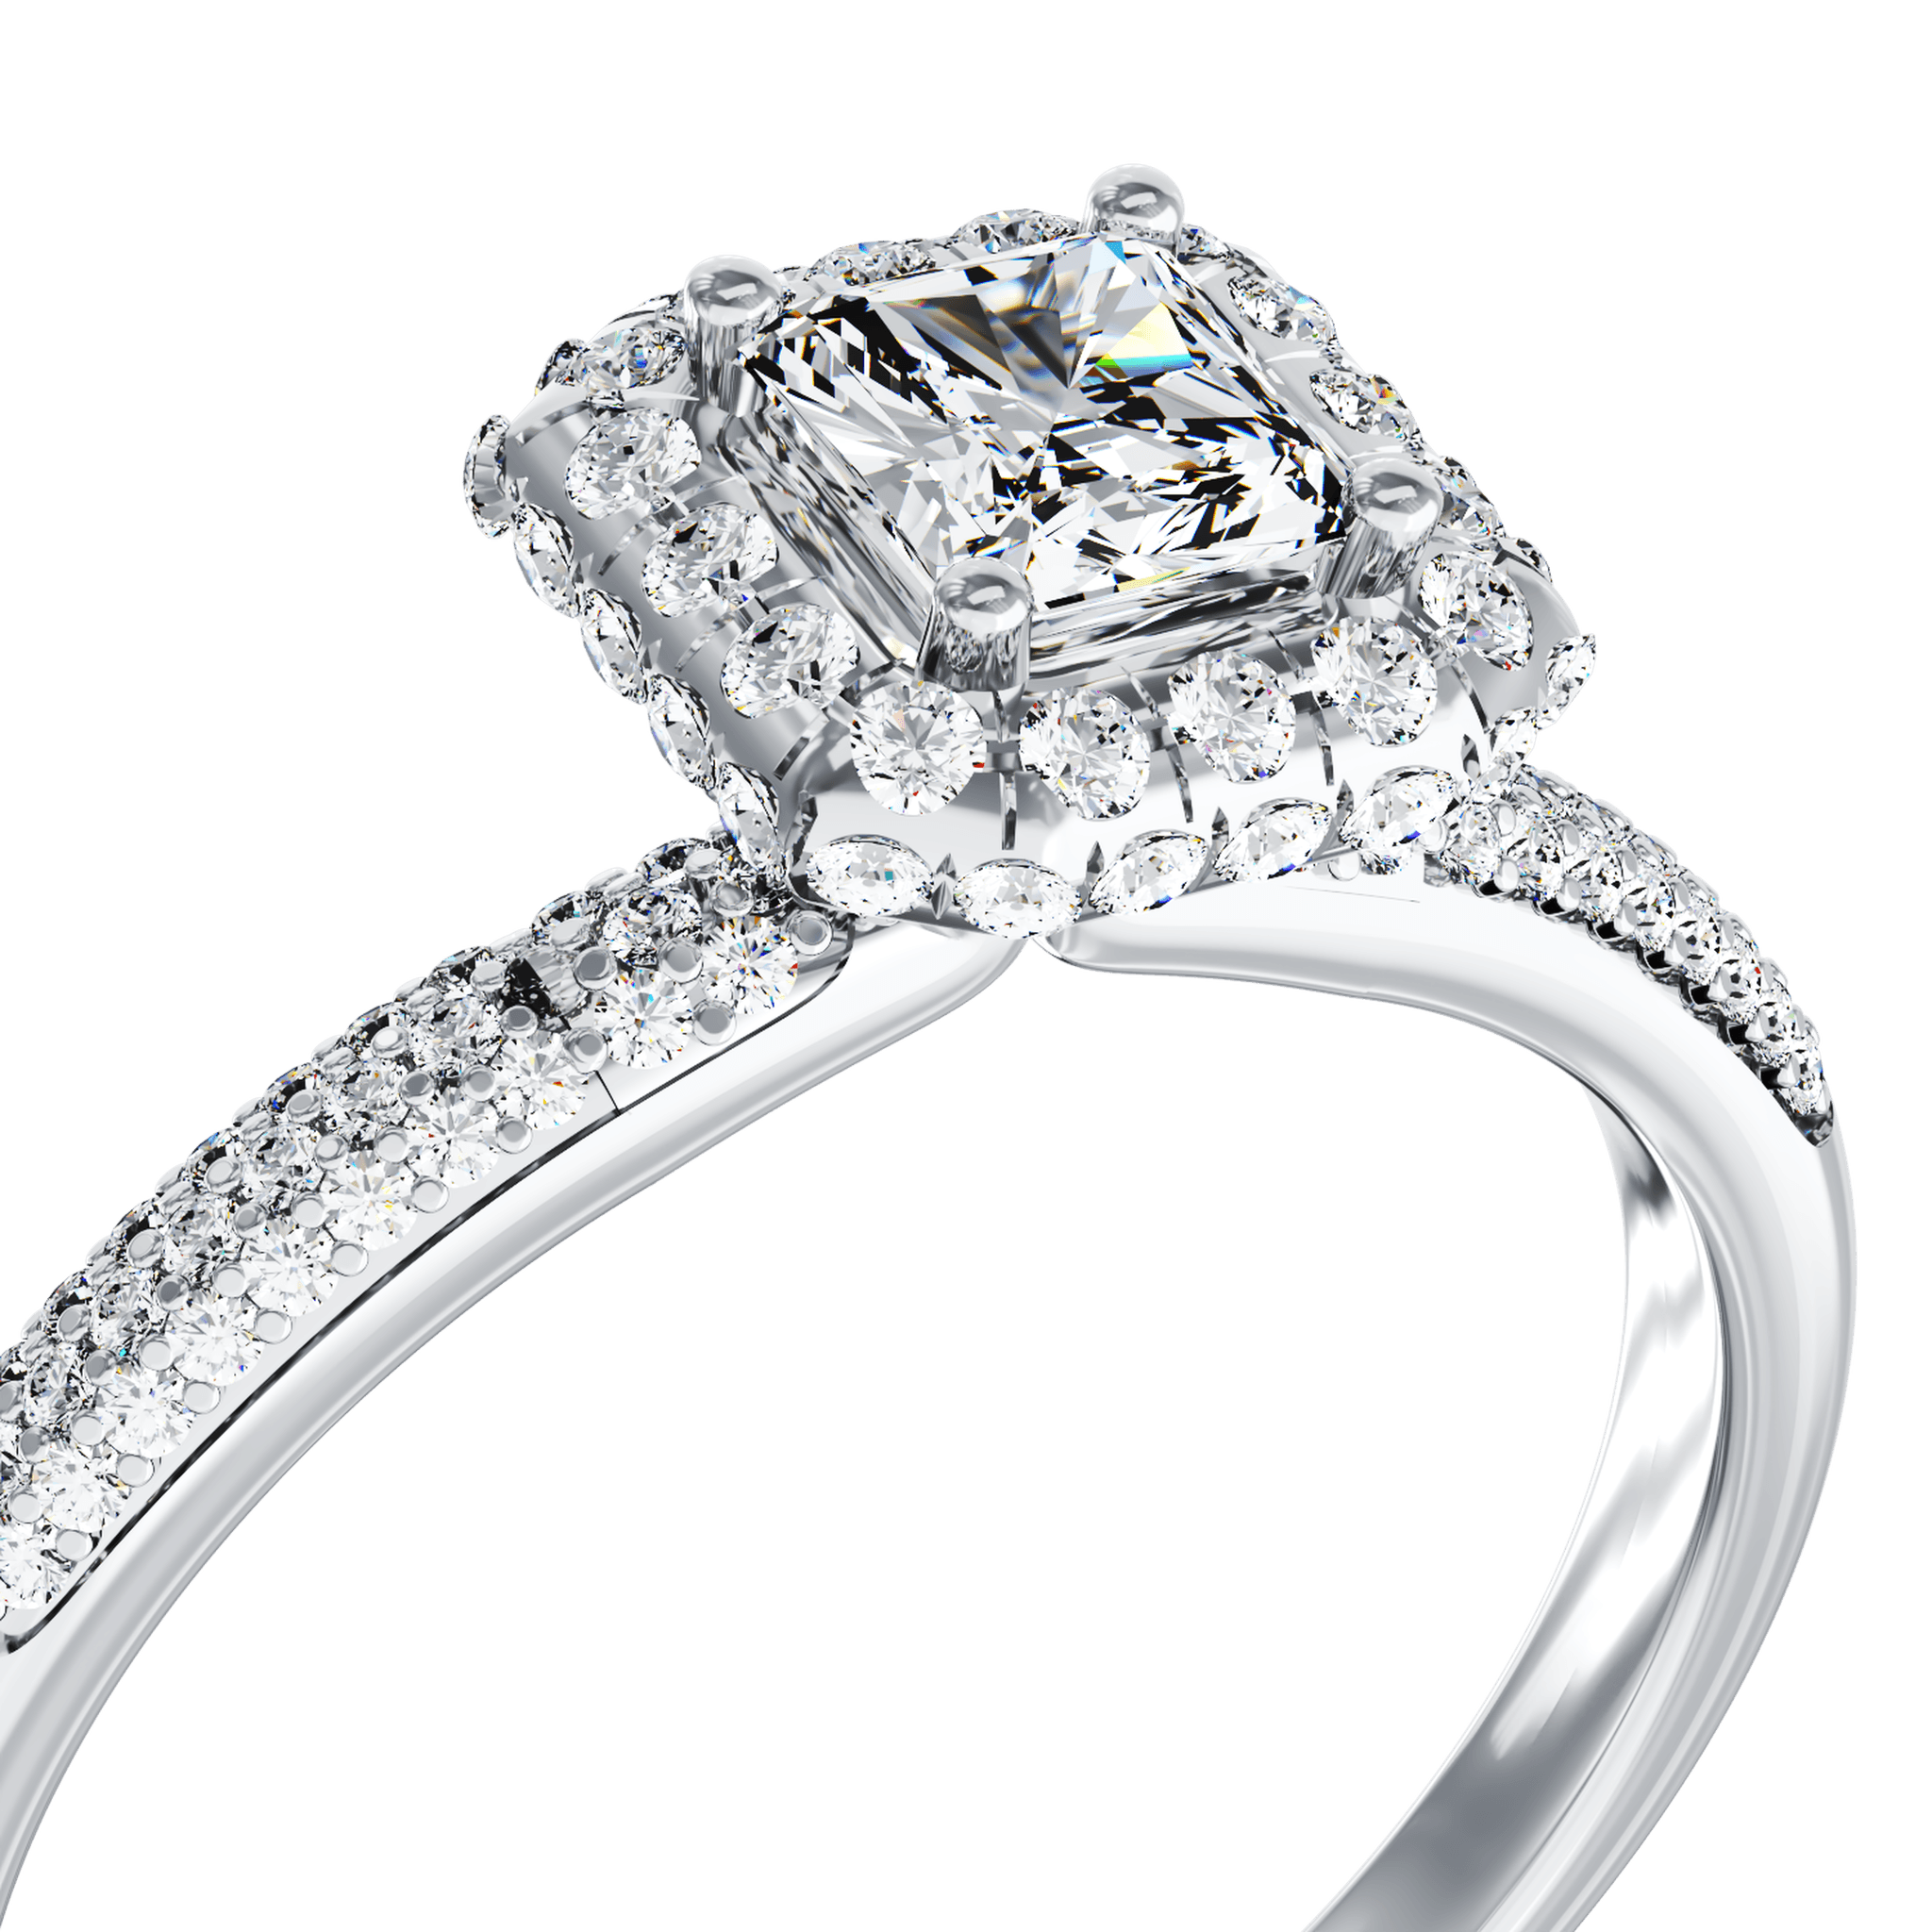 Eljegyzési gyűrű 18K-os fehér aranyból 0,2ct gyémánttal és 0,42ct gyémántokkal. Gramm: 3,09